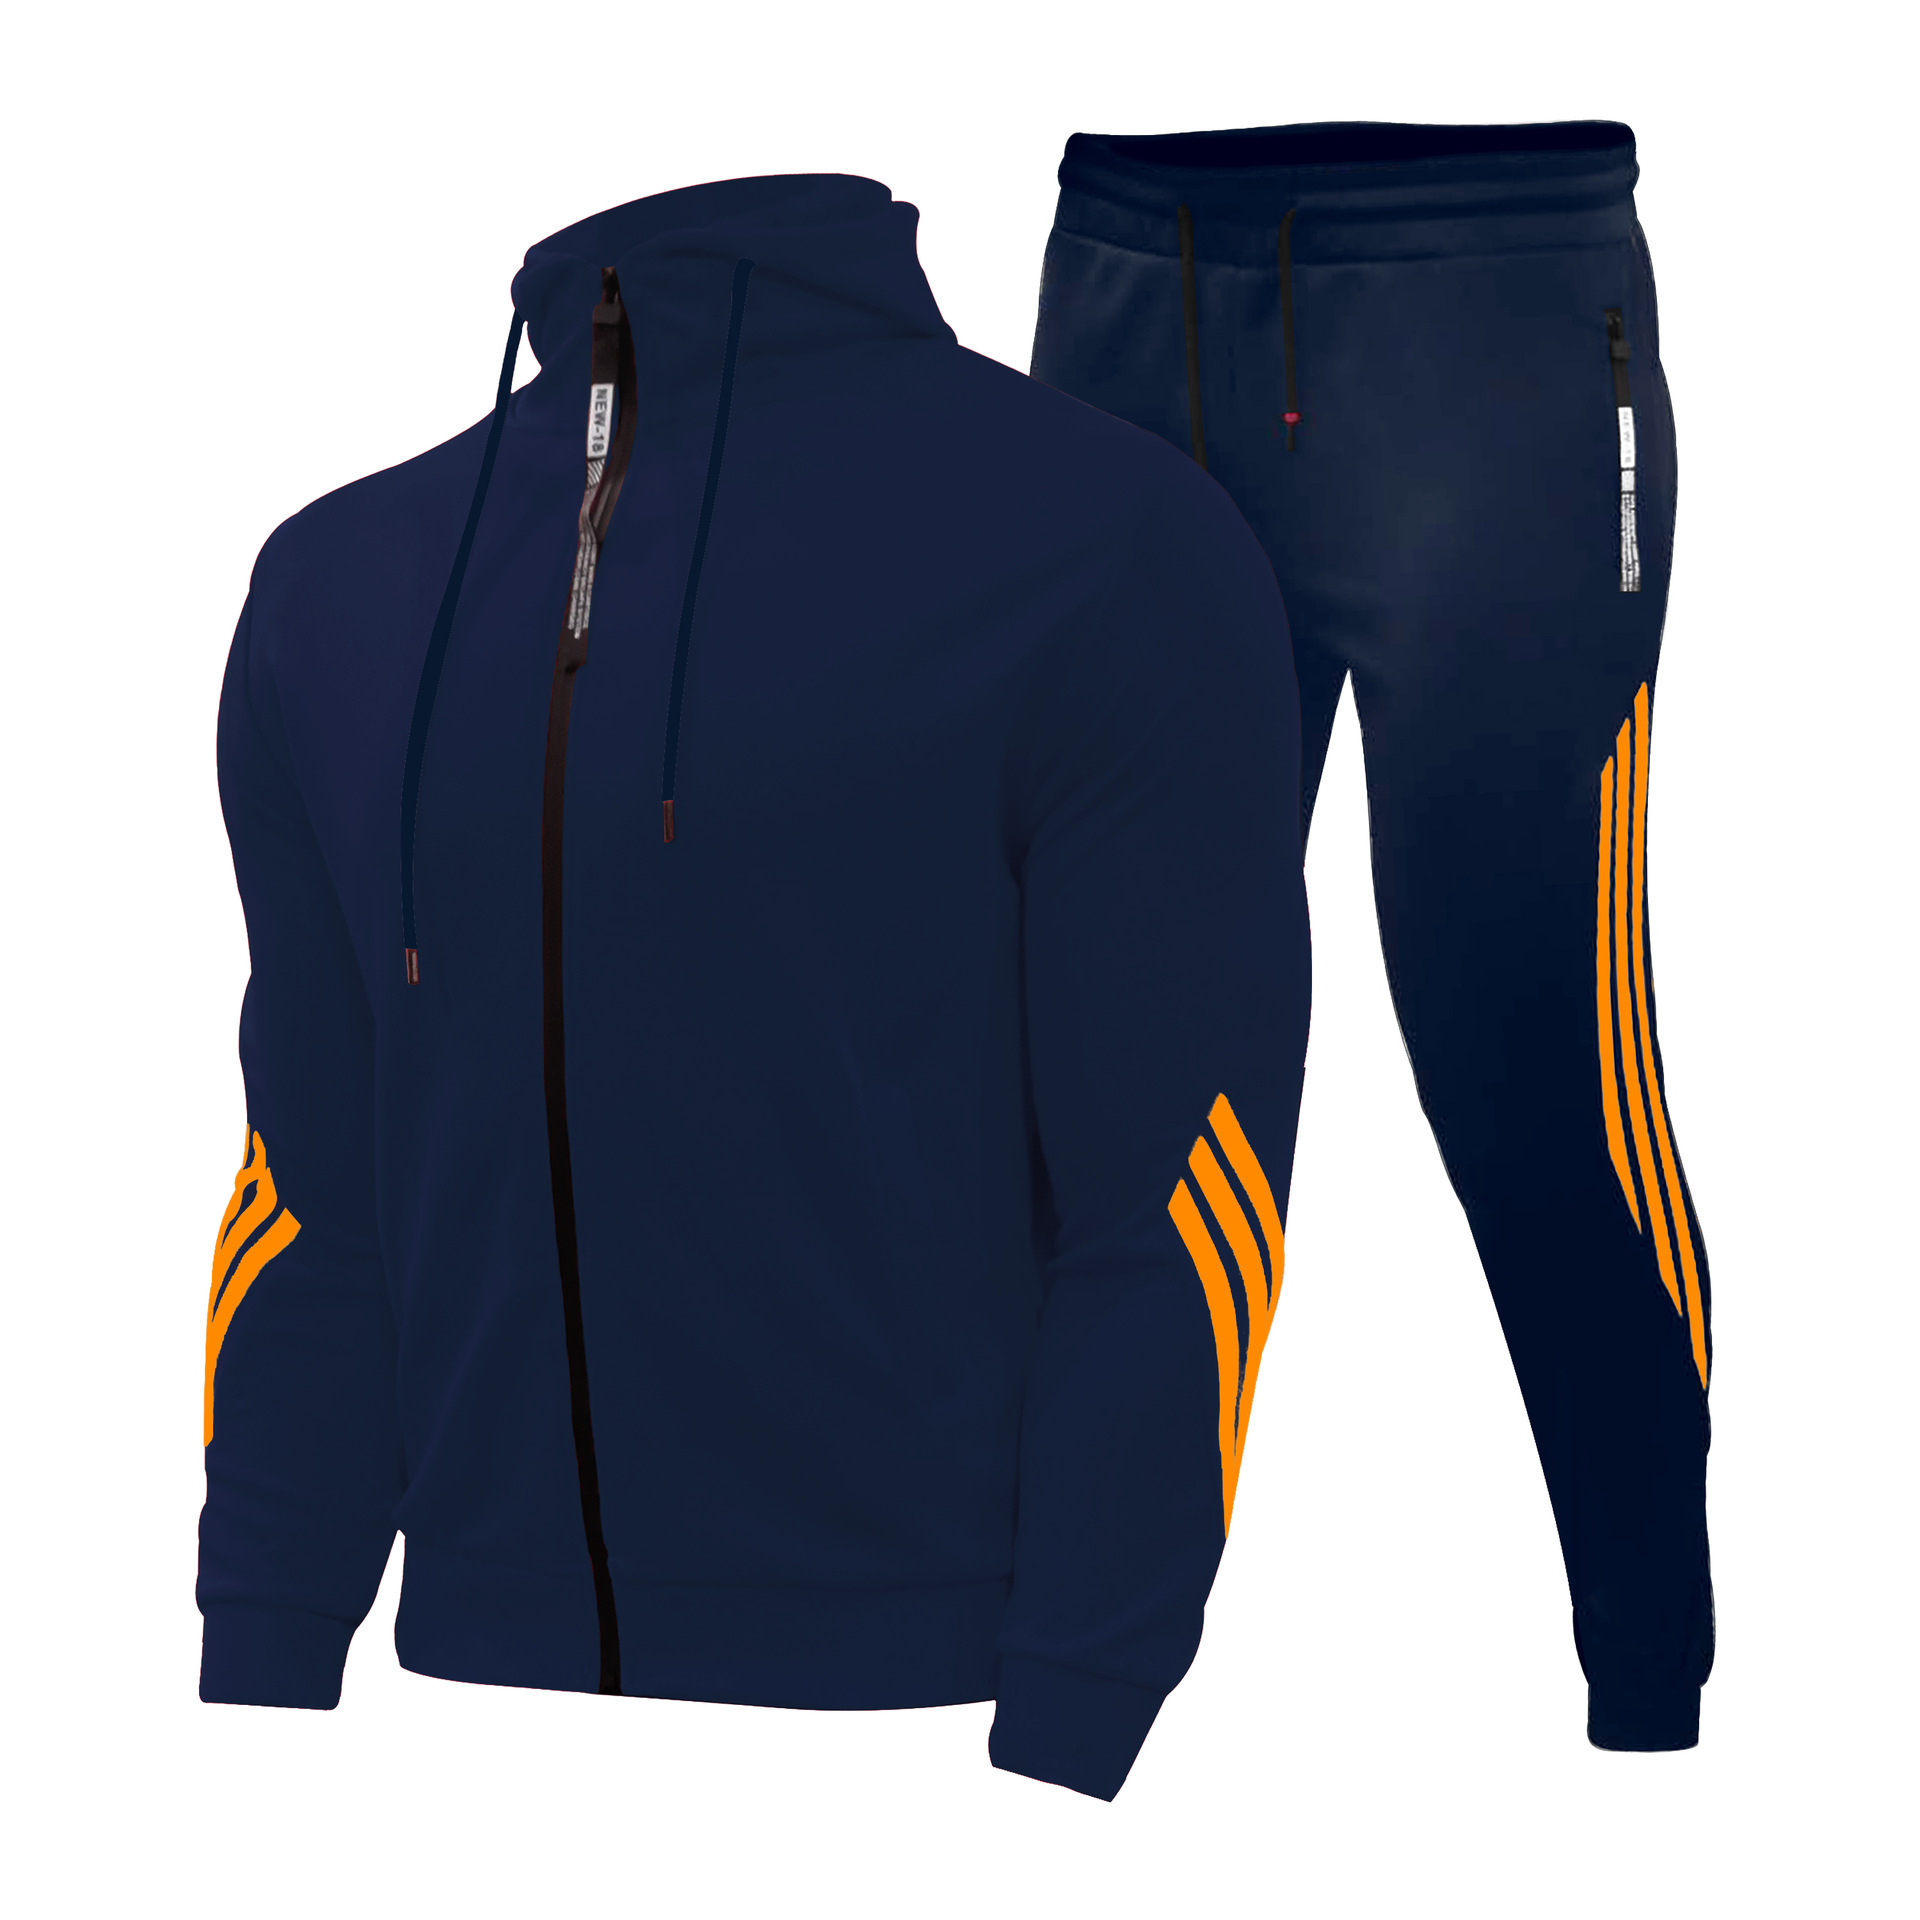 Nouveaux vêtements de sport décontractés pour hommes Pull à capuche Les costumes de sport de course pour hommes et femmes peuvent être personnalisés avec LOGO